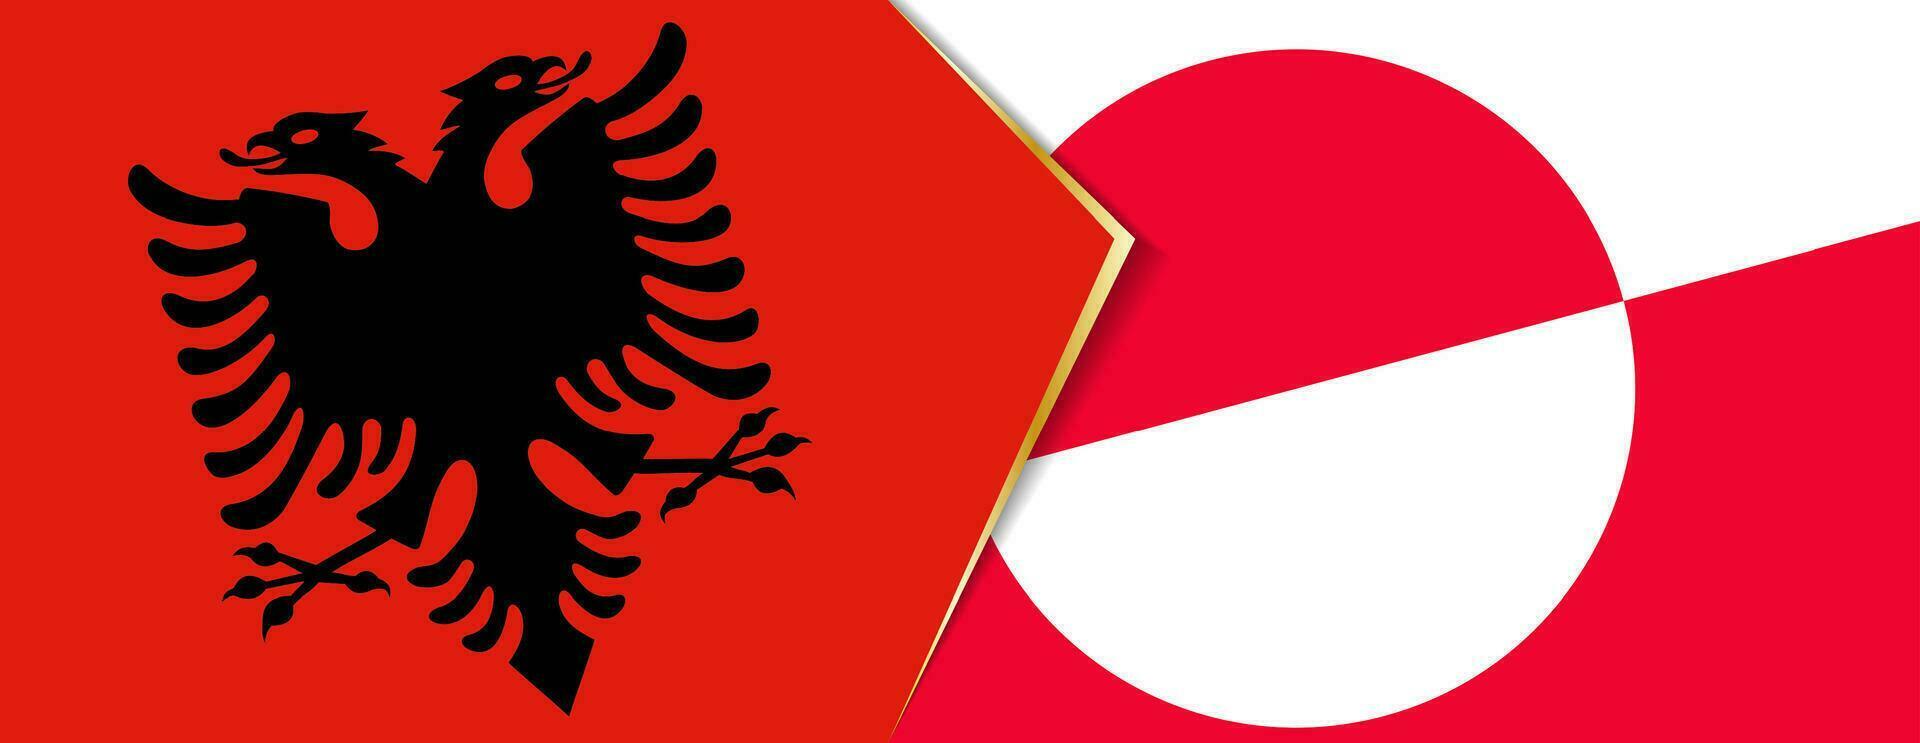 Albania e Groenlandia bandiere, Due vettore bandiere.